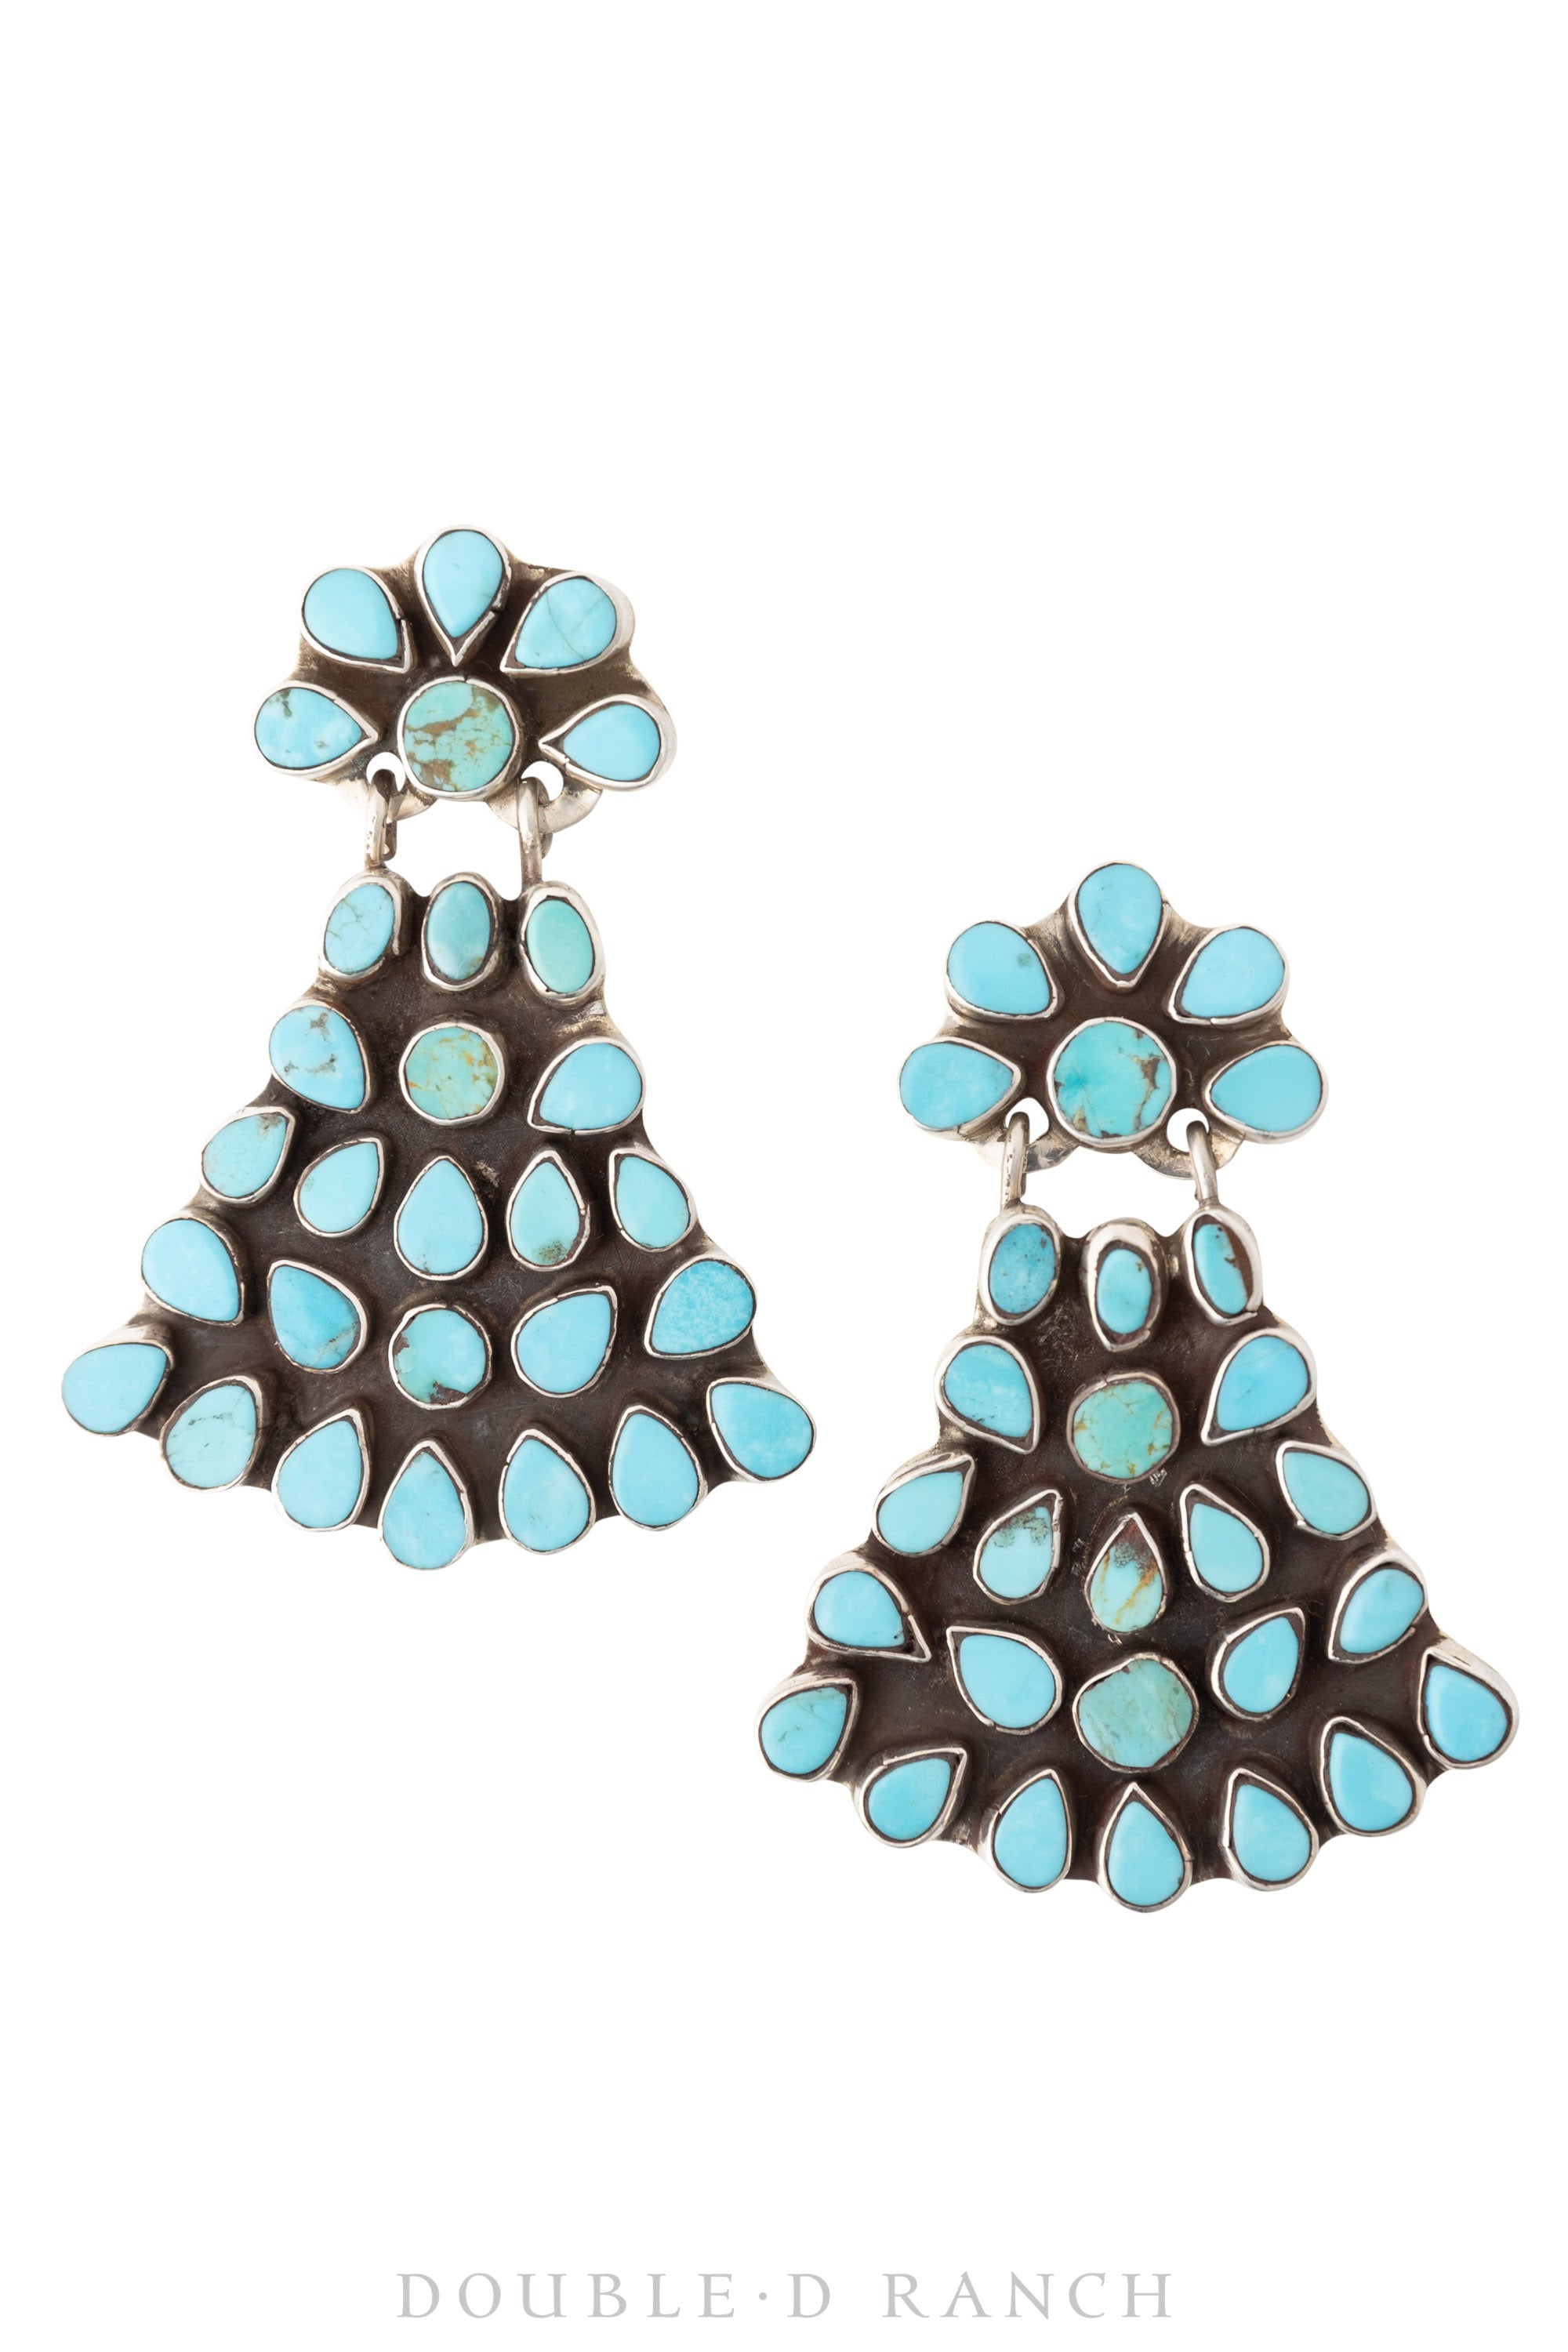 Earrings, Oscar Betz, Fan, Turquoise, Hallmark, 1187